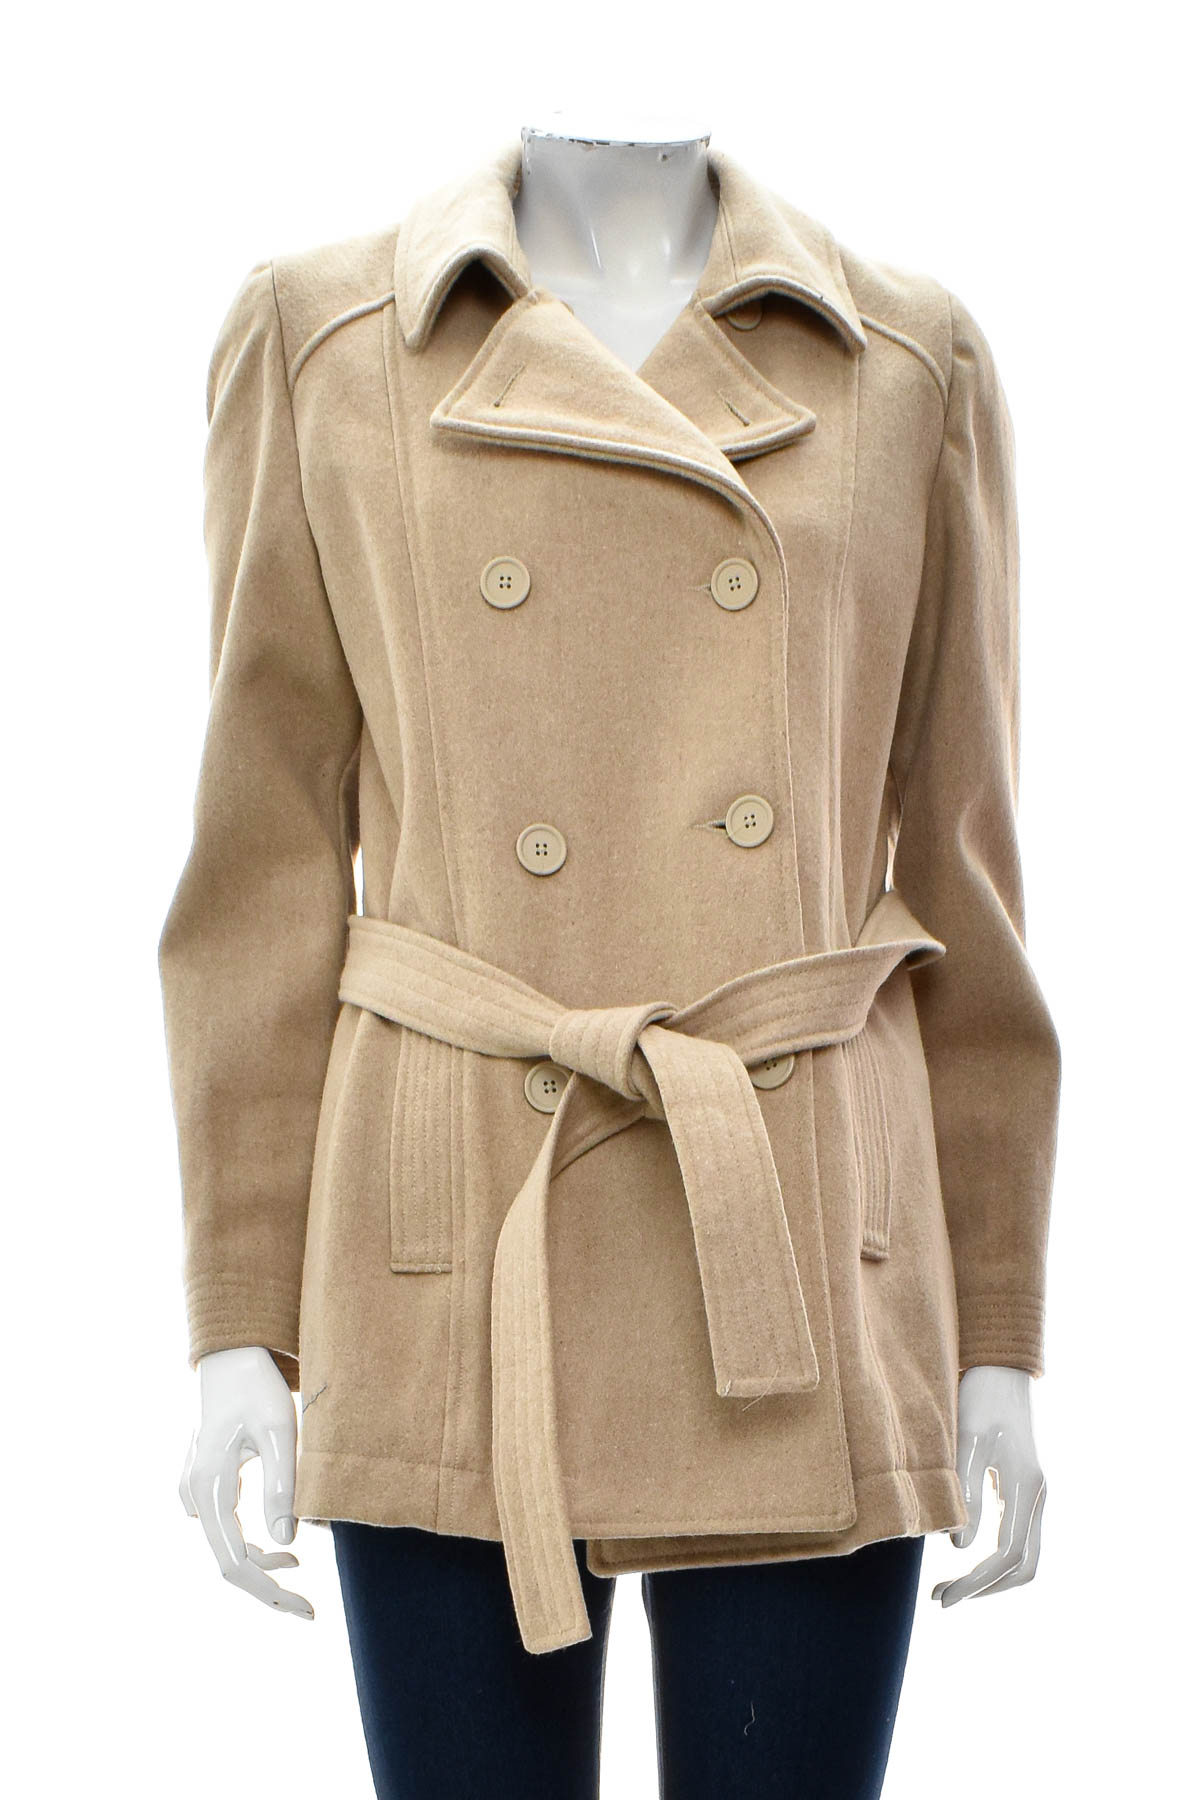 Γυναικείο παλτό - OLD NAVY - 0